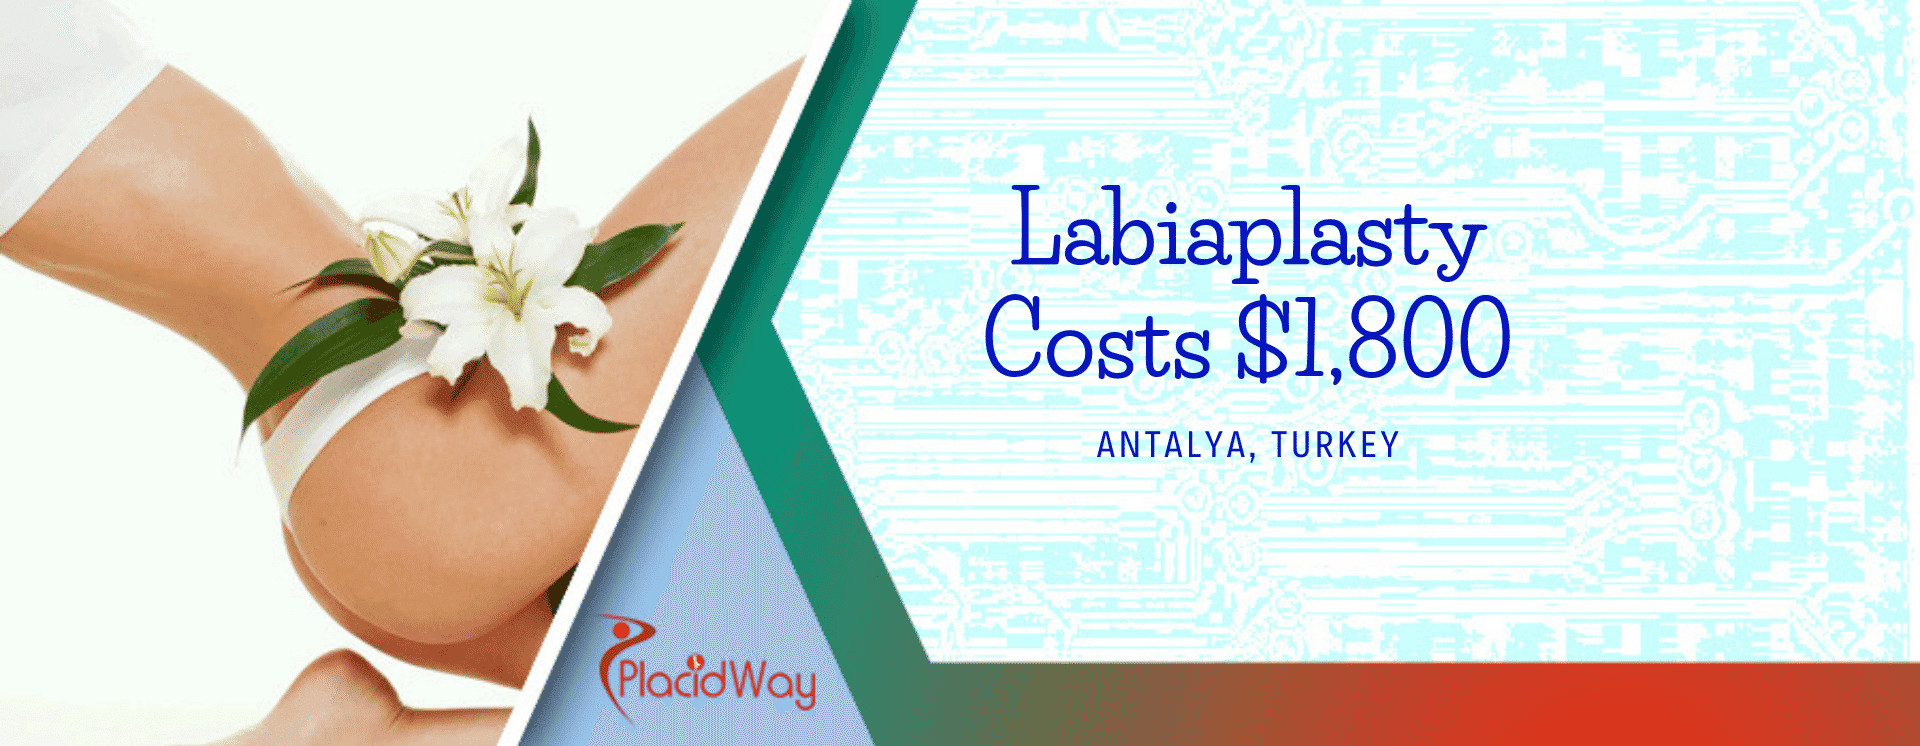 Labiaplasty in Antalya, Turkey